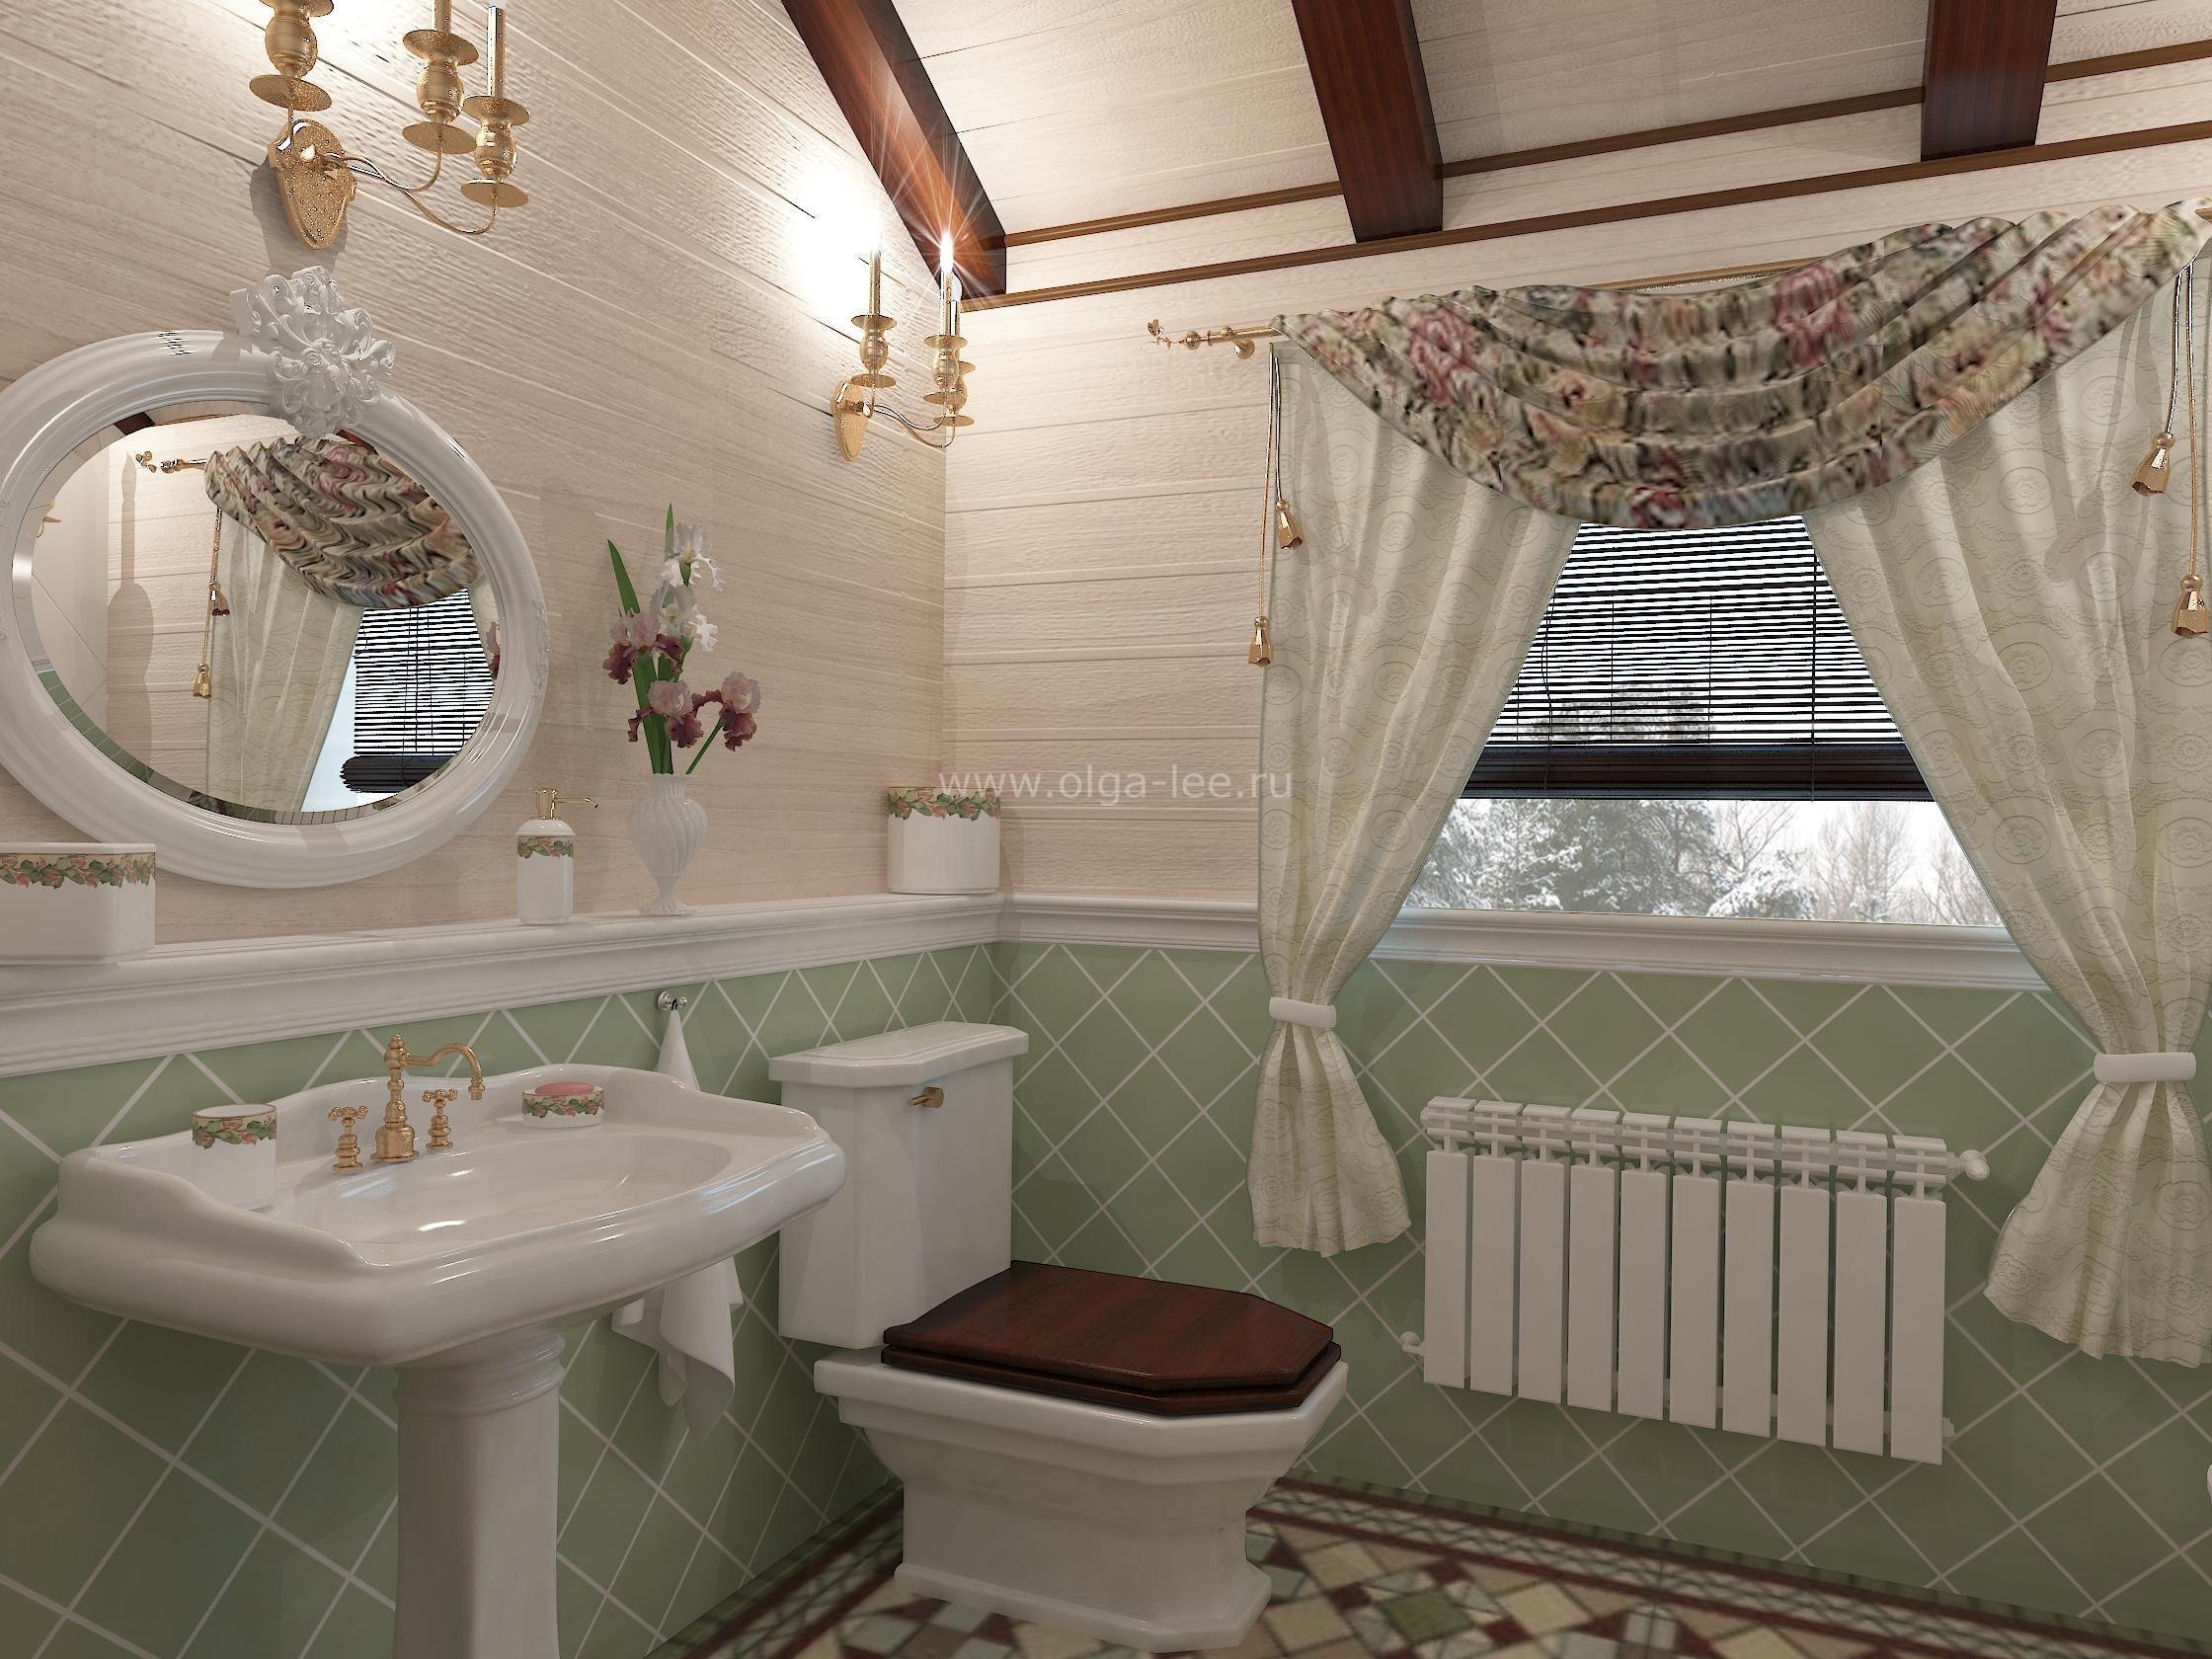 Ванная комната в дачном доме (78 фото)